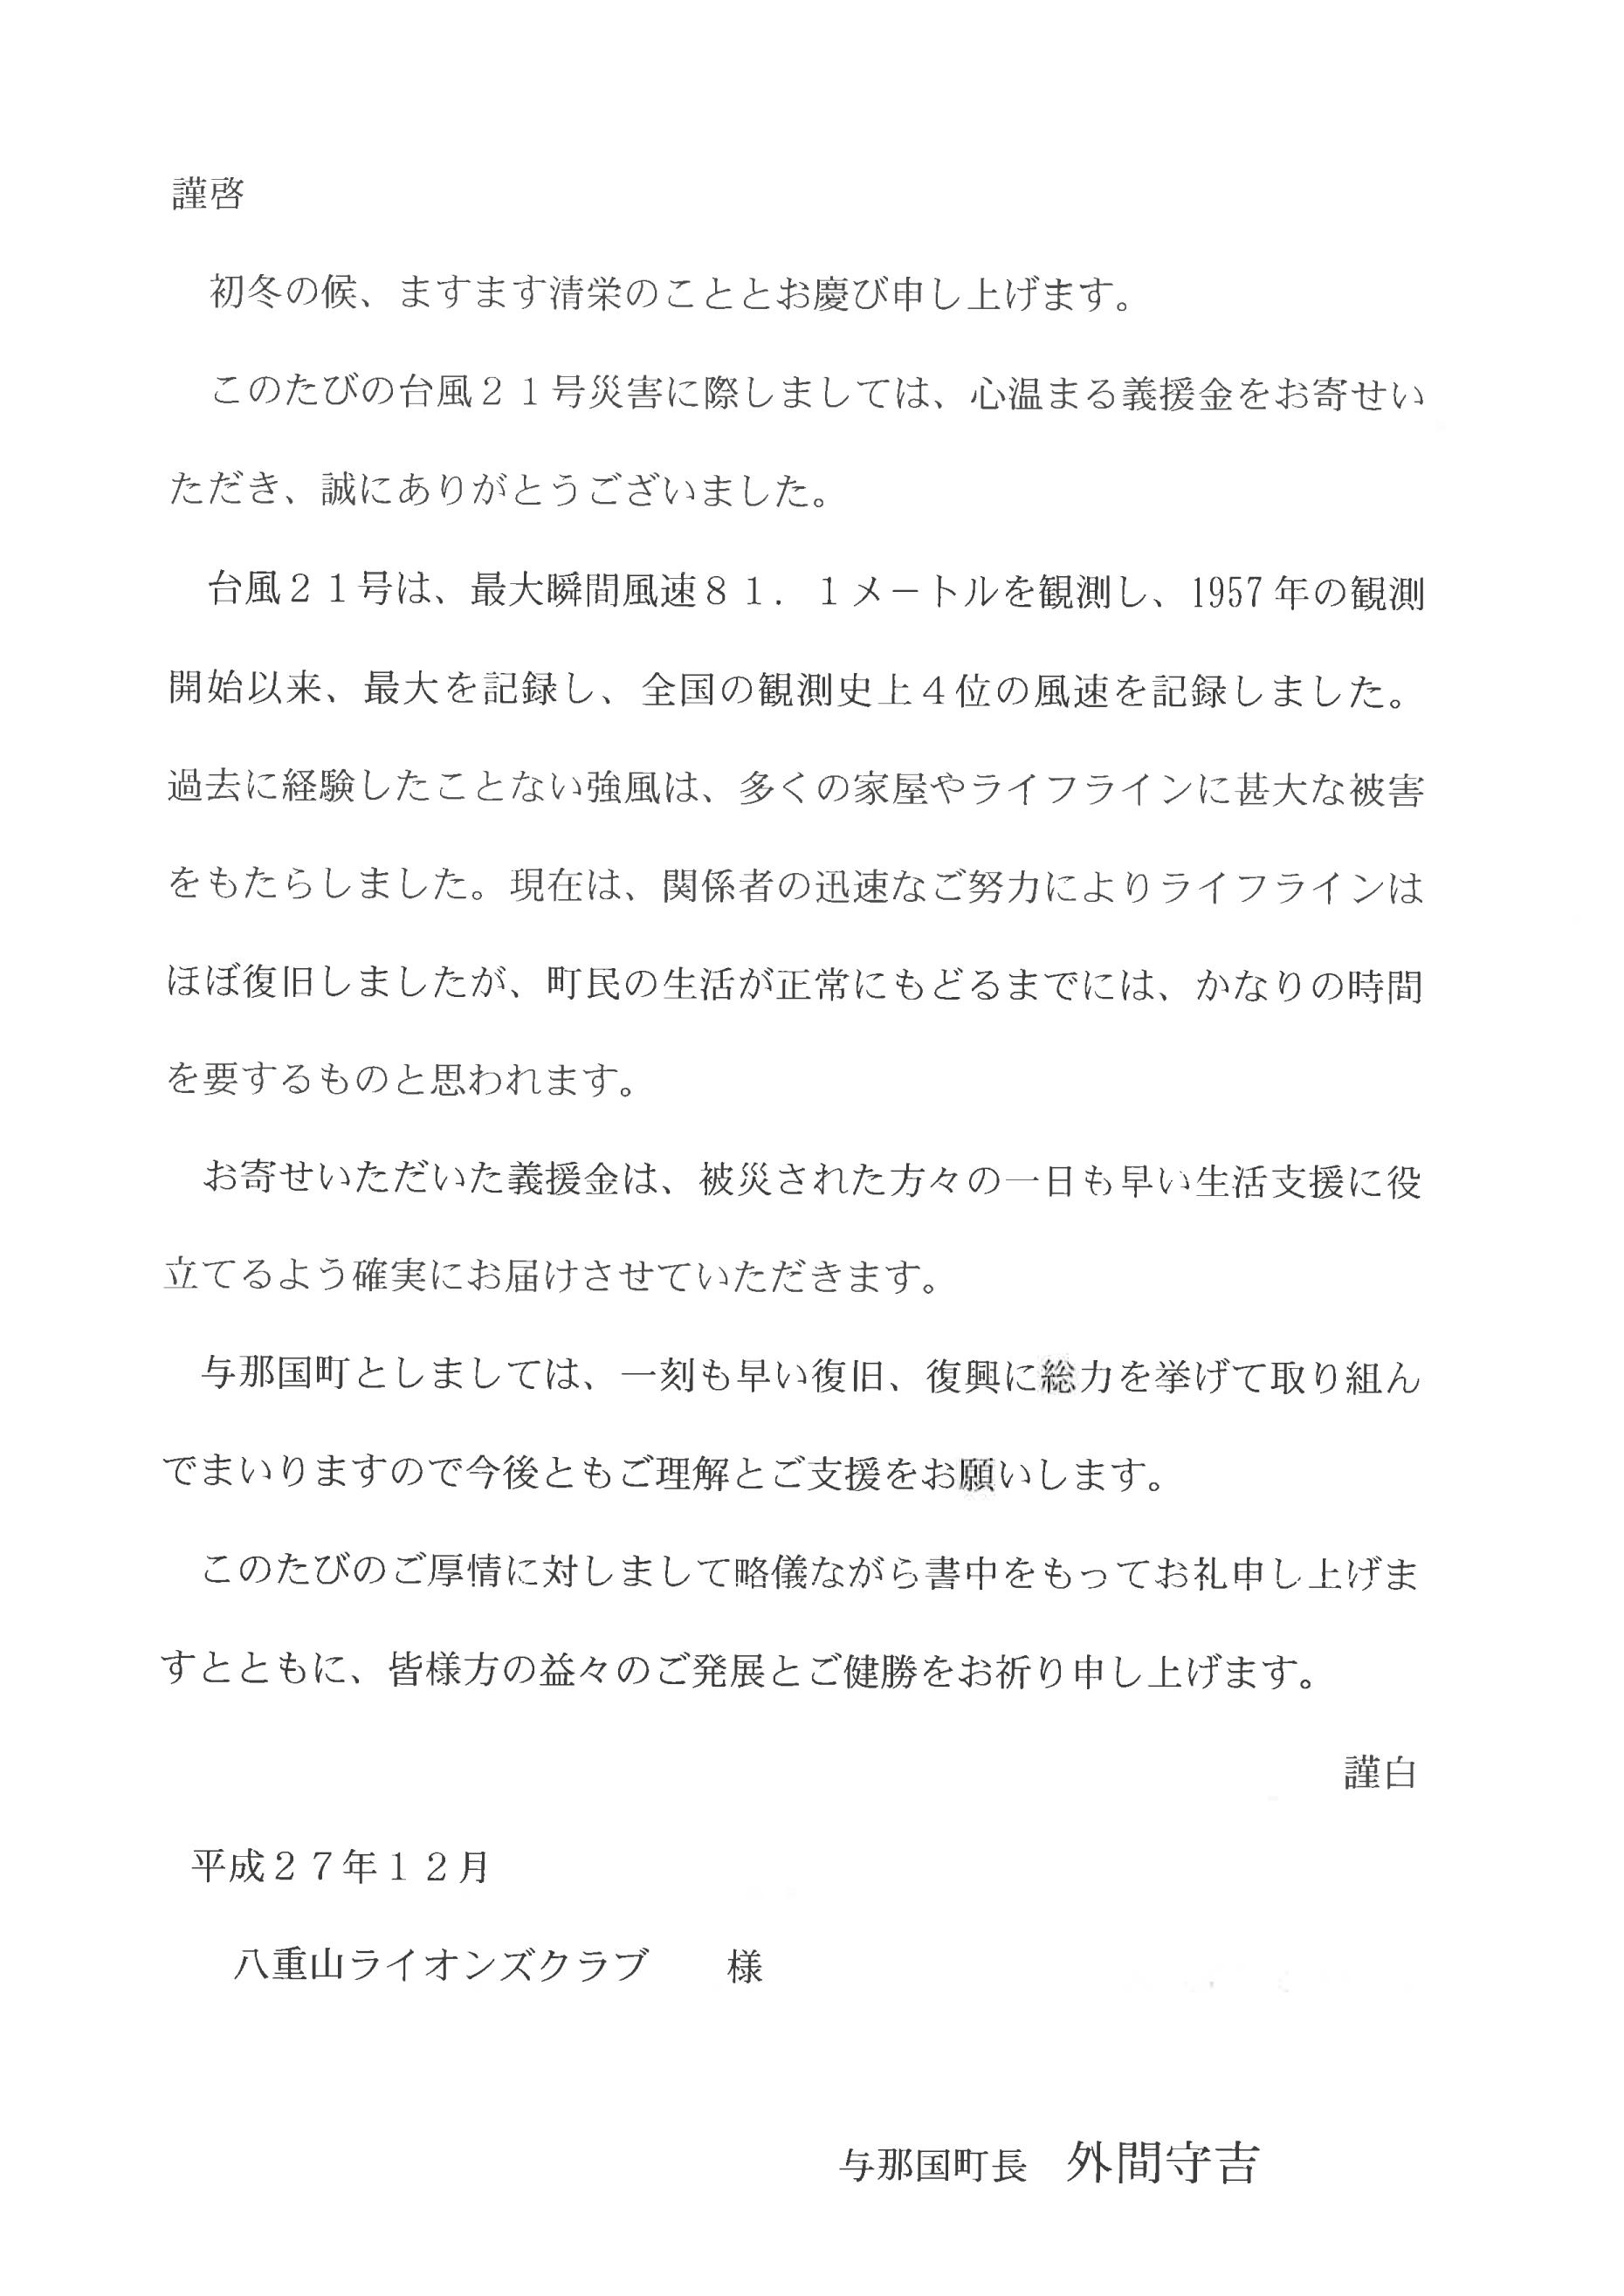 岡崎クエストライオンズクラブ Blog Archive 台風被害への見舞金のお礼状をいただきました